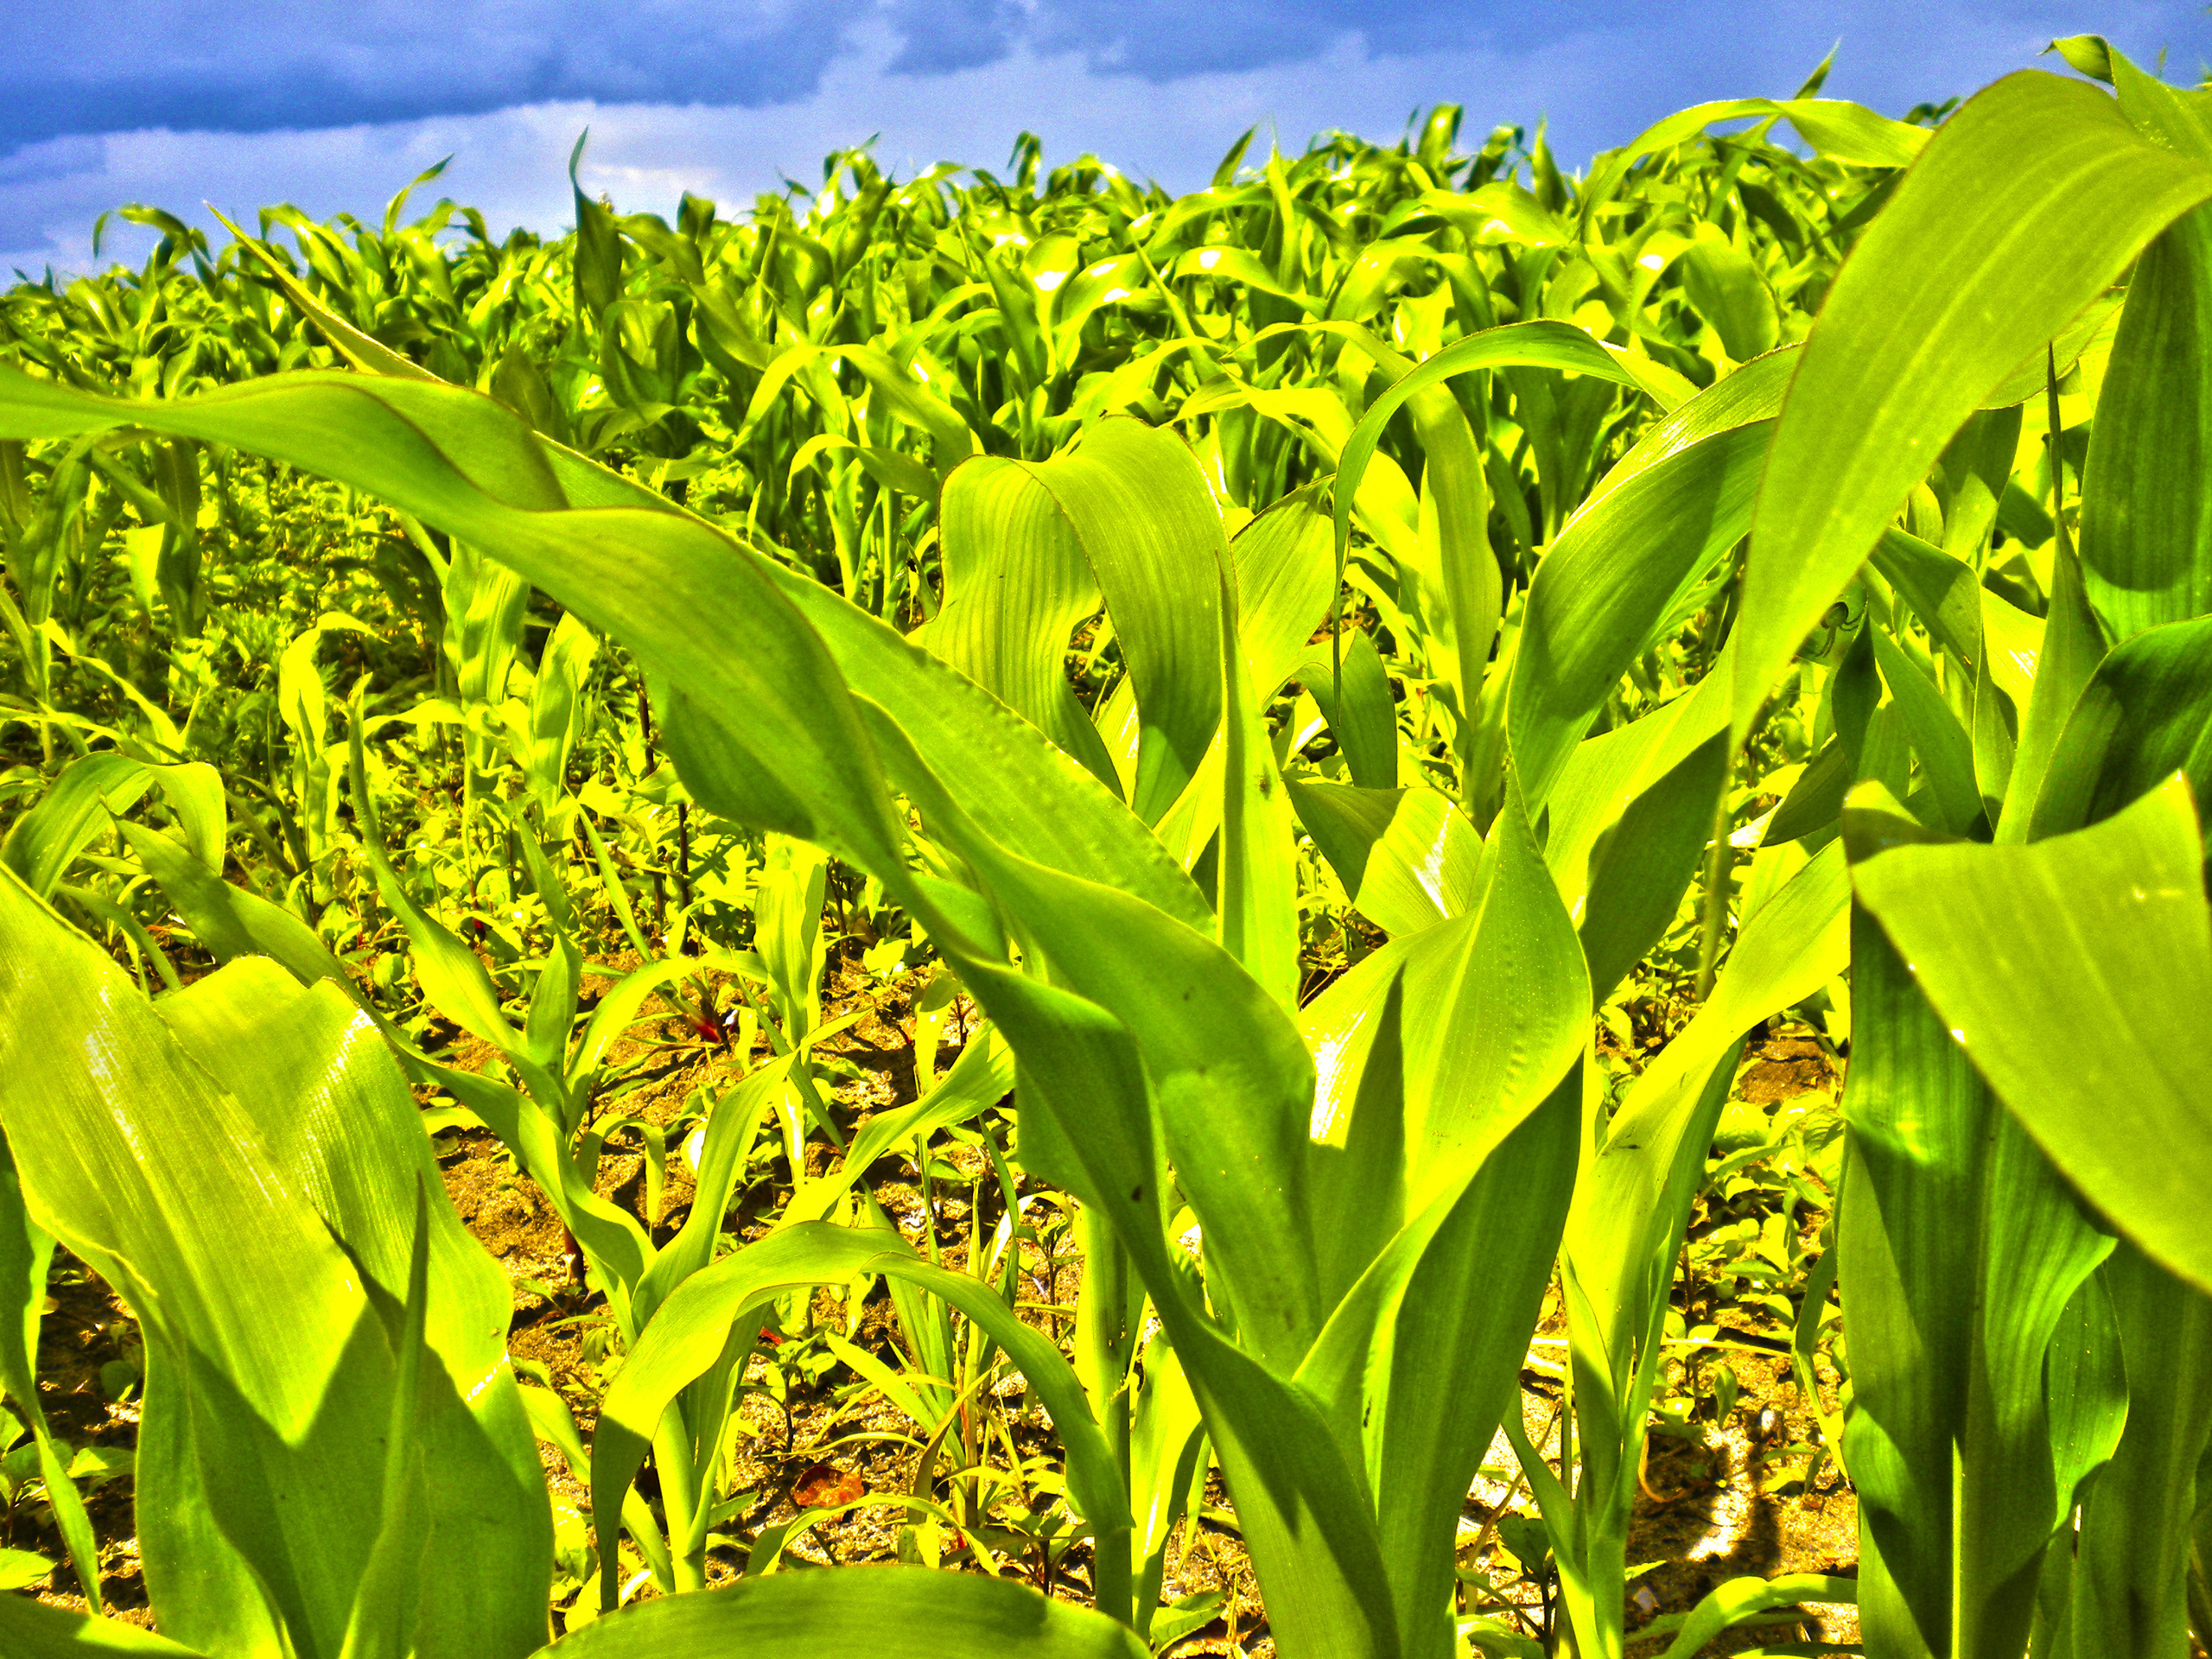 Более 1 млн т зерна кукурузы планируется собрать в этом году - Заяц 